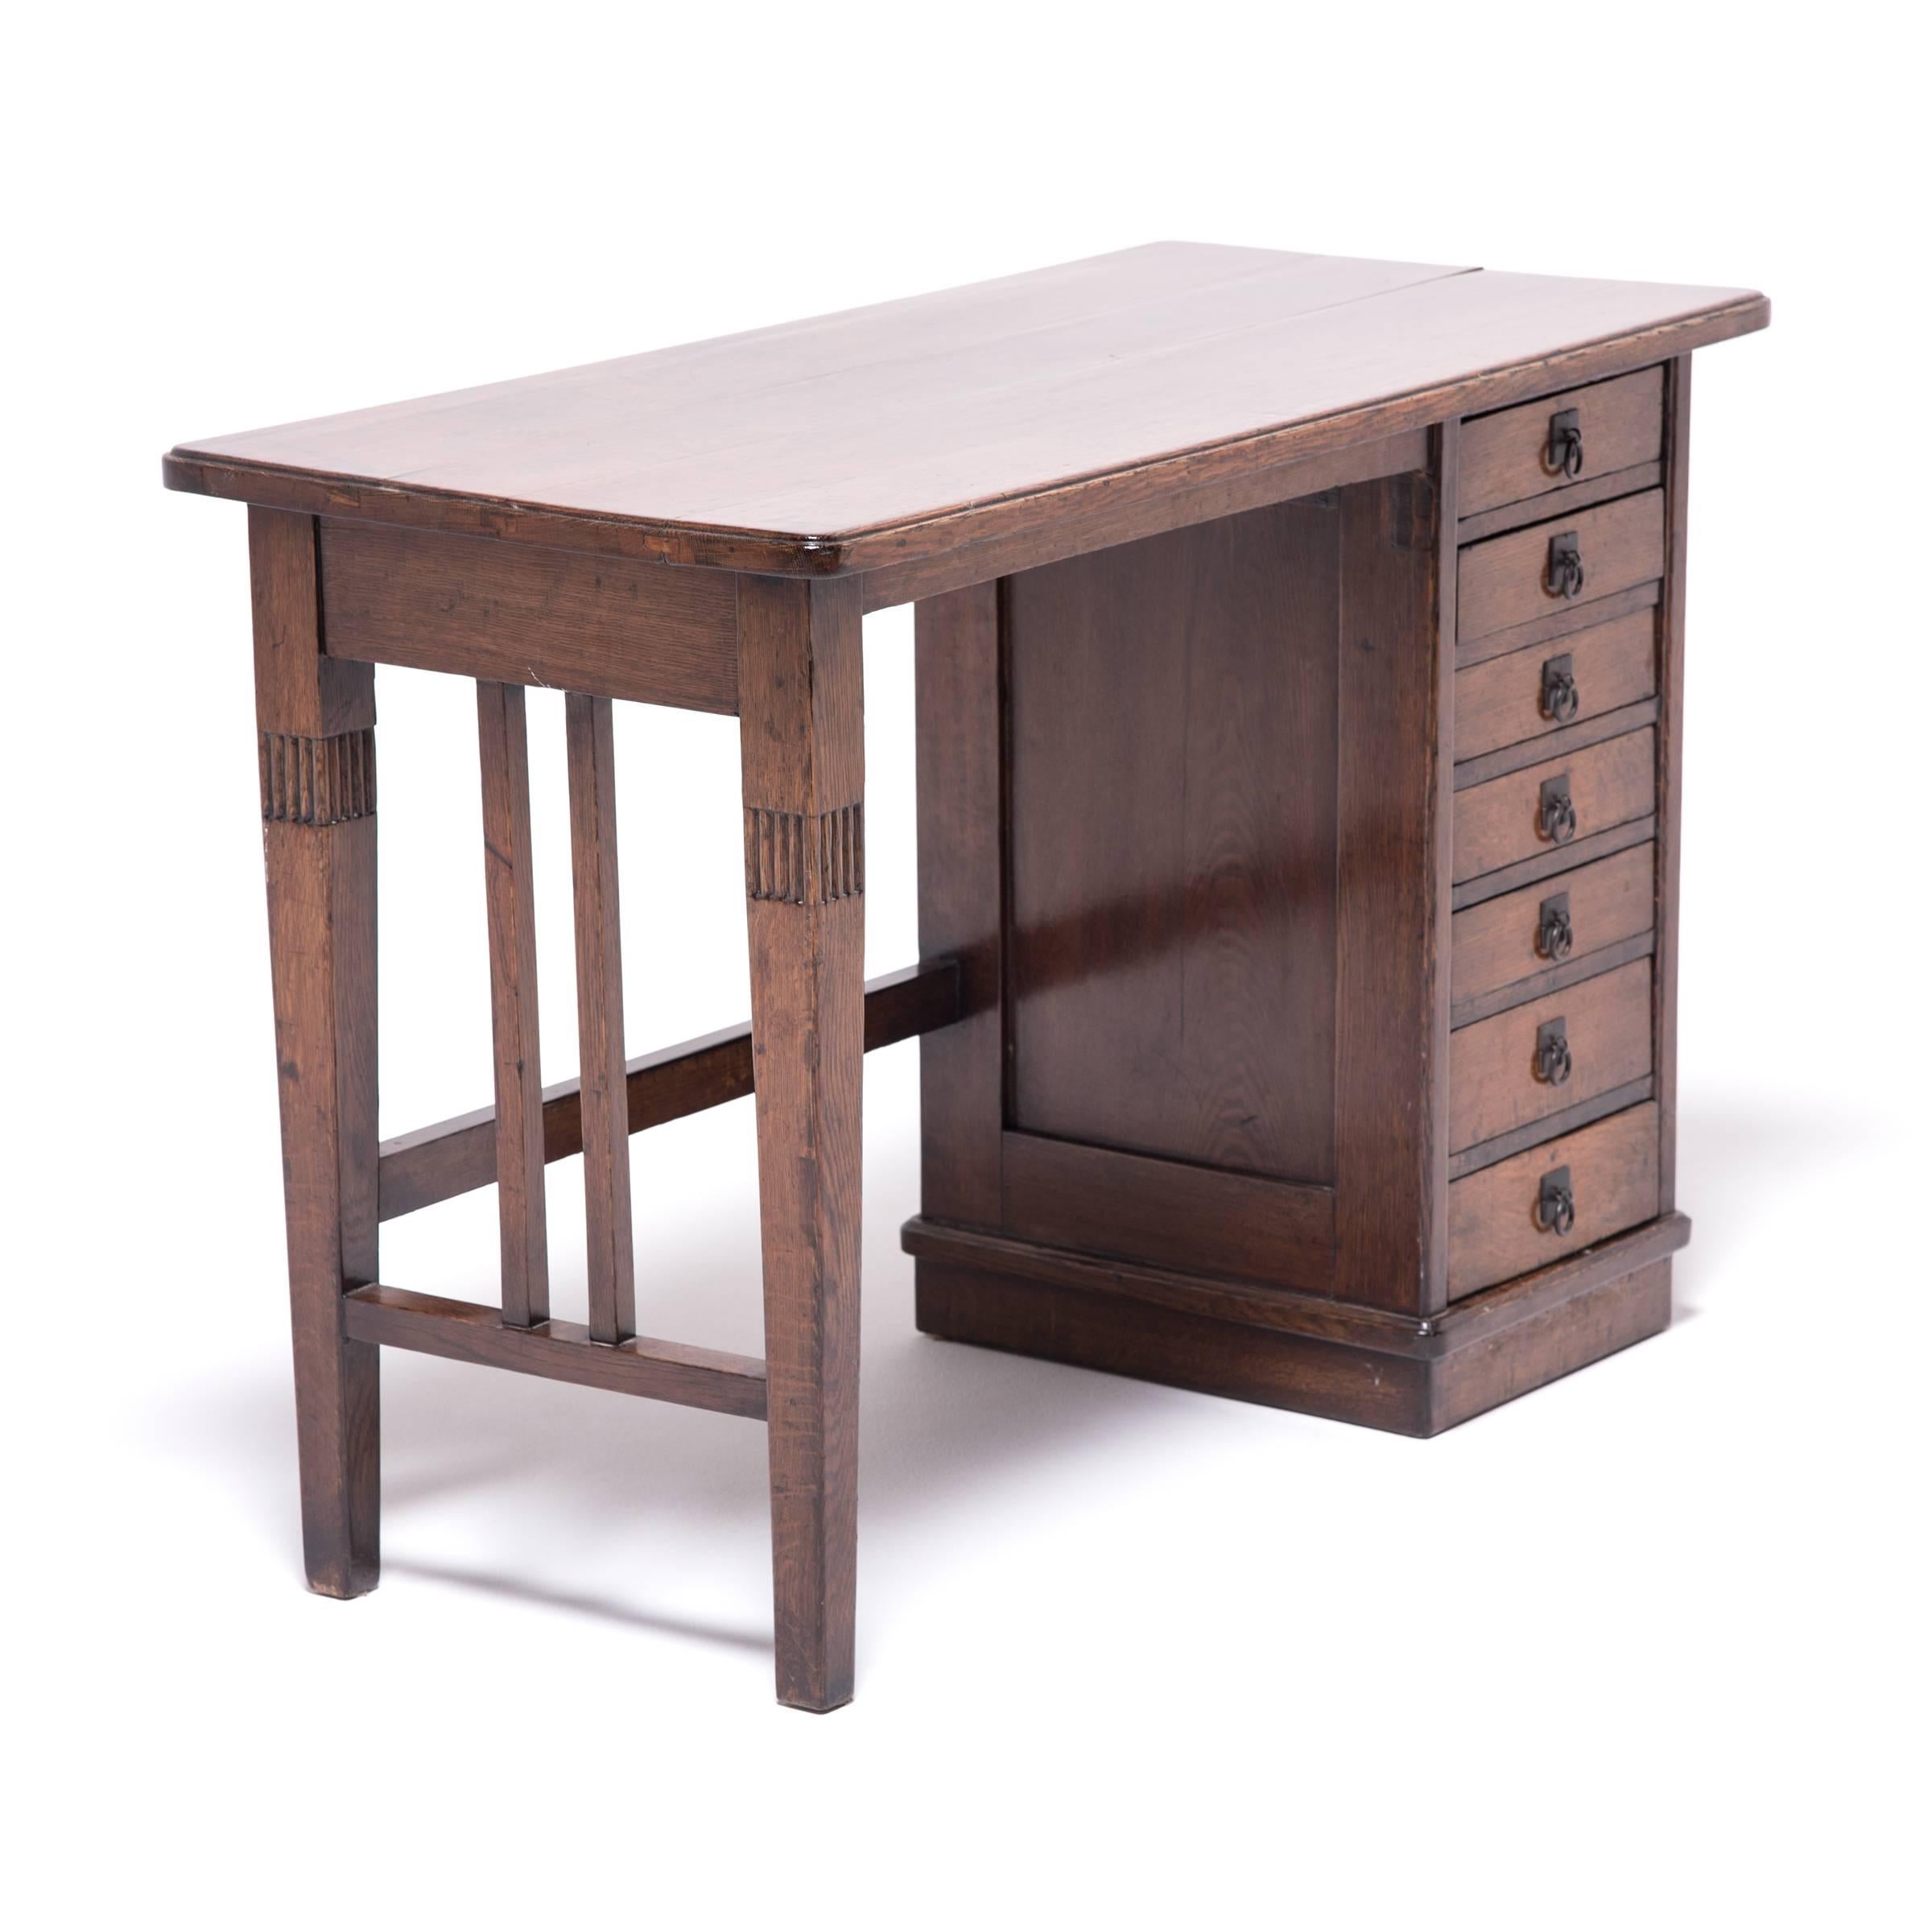 Dieser zierliche Schreibtisch aus Ulmenholz bezaubert durch seine ungewöhnliche Mischung aus östlichen und westlichen Stilen. Der in Nordchina hergestellte Schreibtisch stammt aus dem späten 19. Jahrhundert, einer Zeit, in der ein reger kultureller